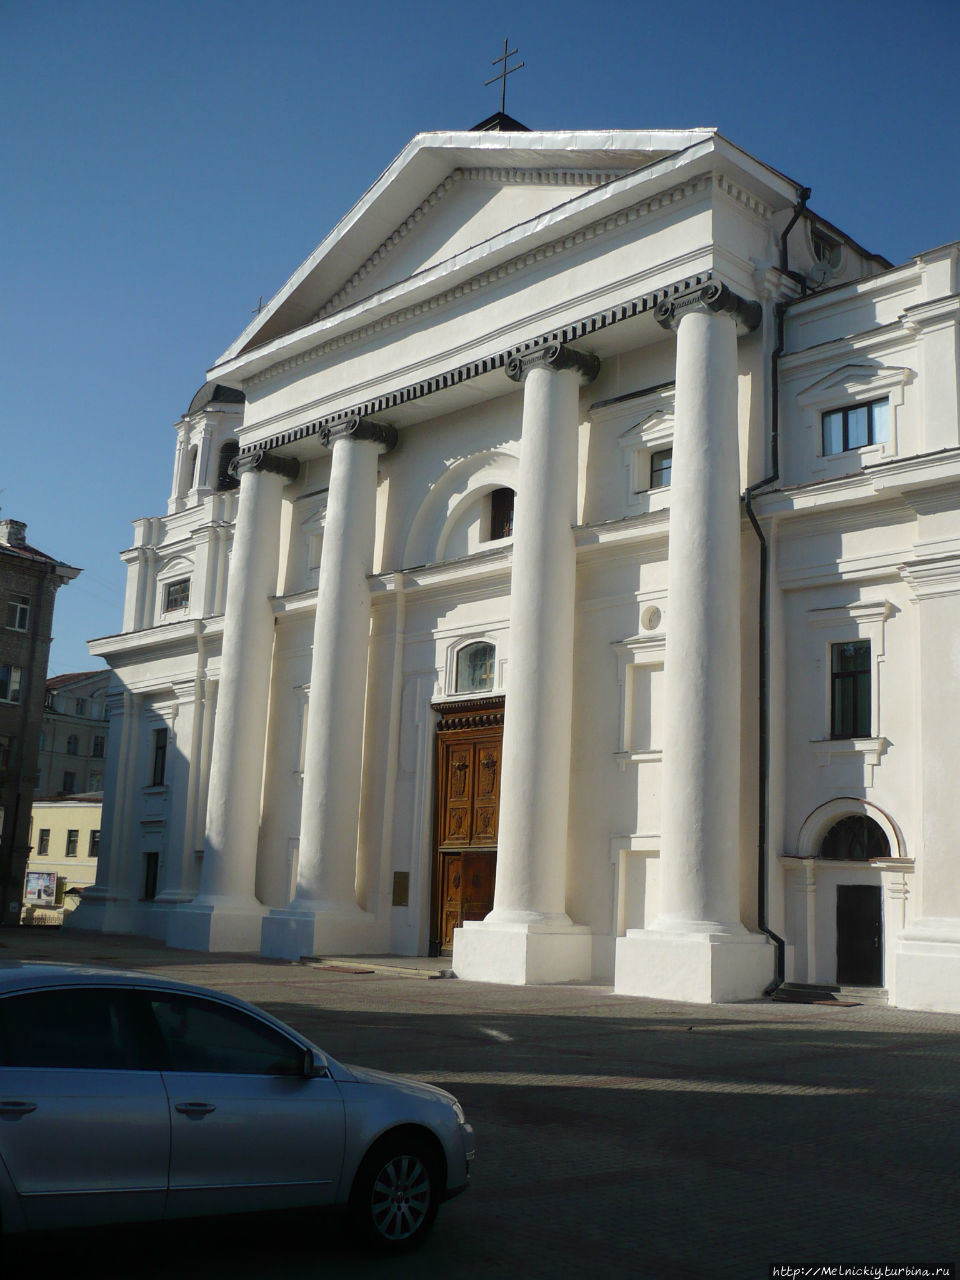 Костел Успения Девы Марии и Святого Станислава Могилев, Беларусь